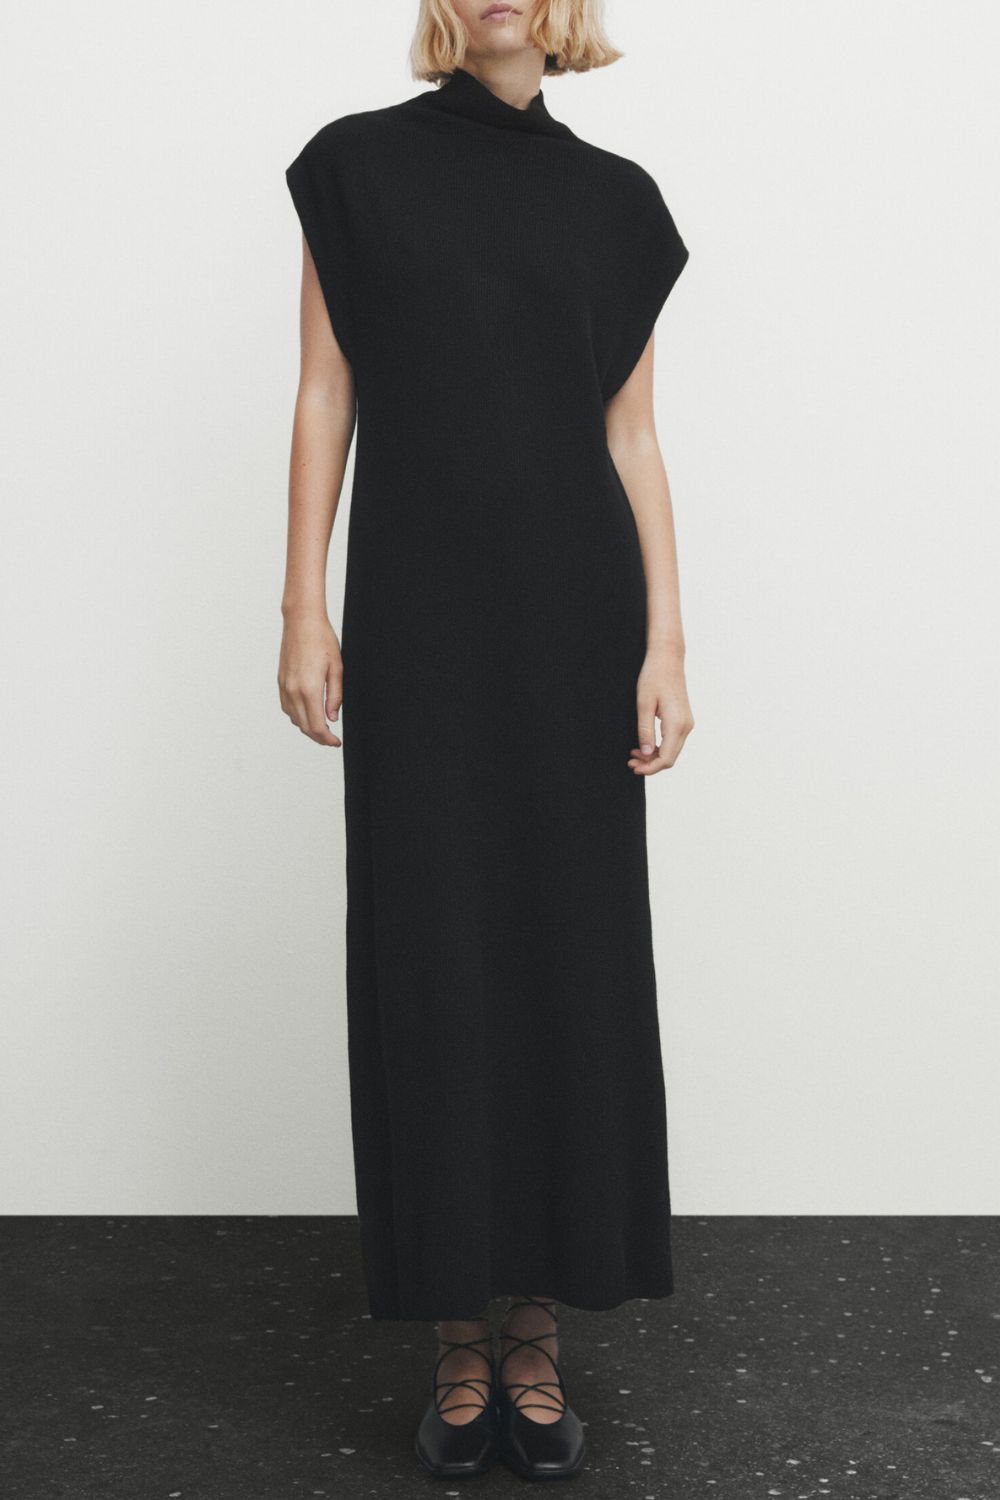 Czarna sukienka dzianinowa Massimo Dutti, 349 zł (Fot. materiały prasowe)